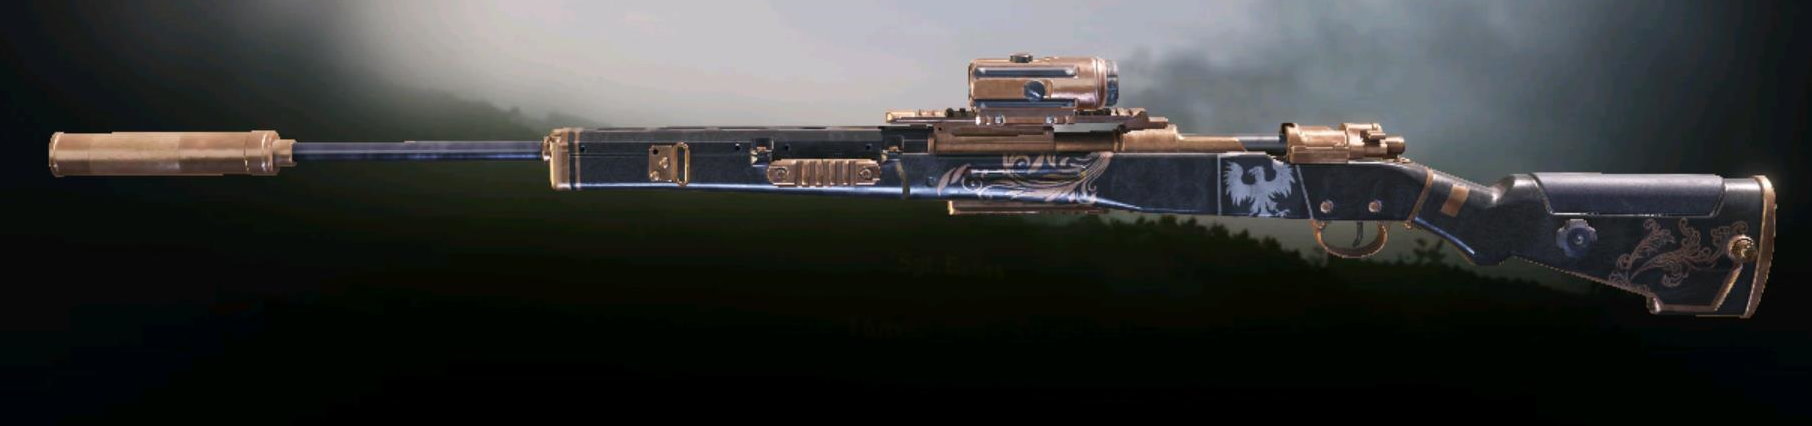 Kilo Bolt-Action Lazarus, Epic camo in Call of Duty Mobile